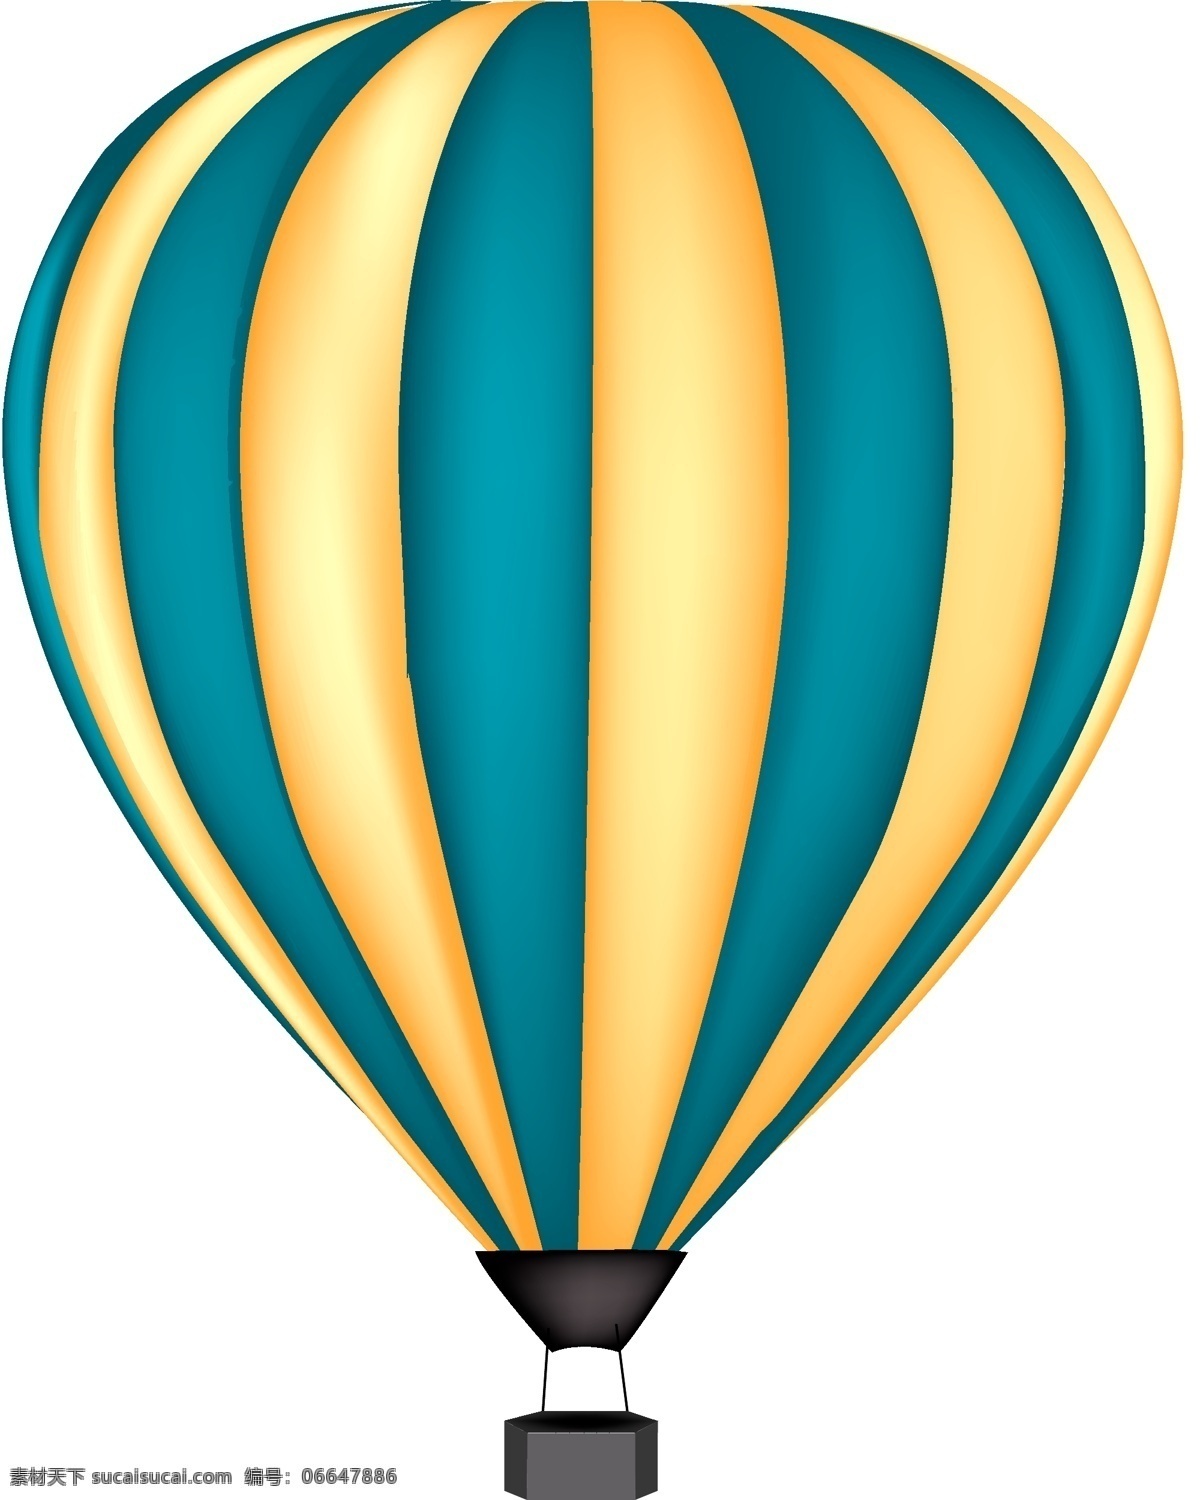 创意 世界 旅游 日 热气球 矢量 旅游日 矢量素材